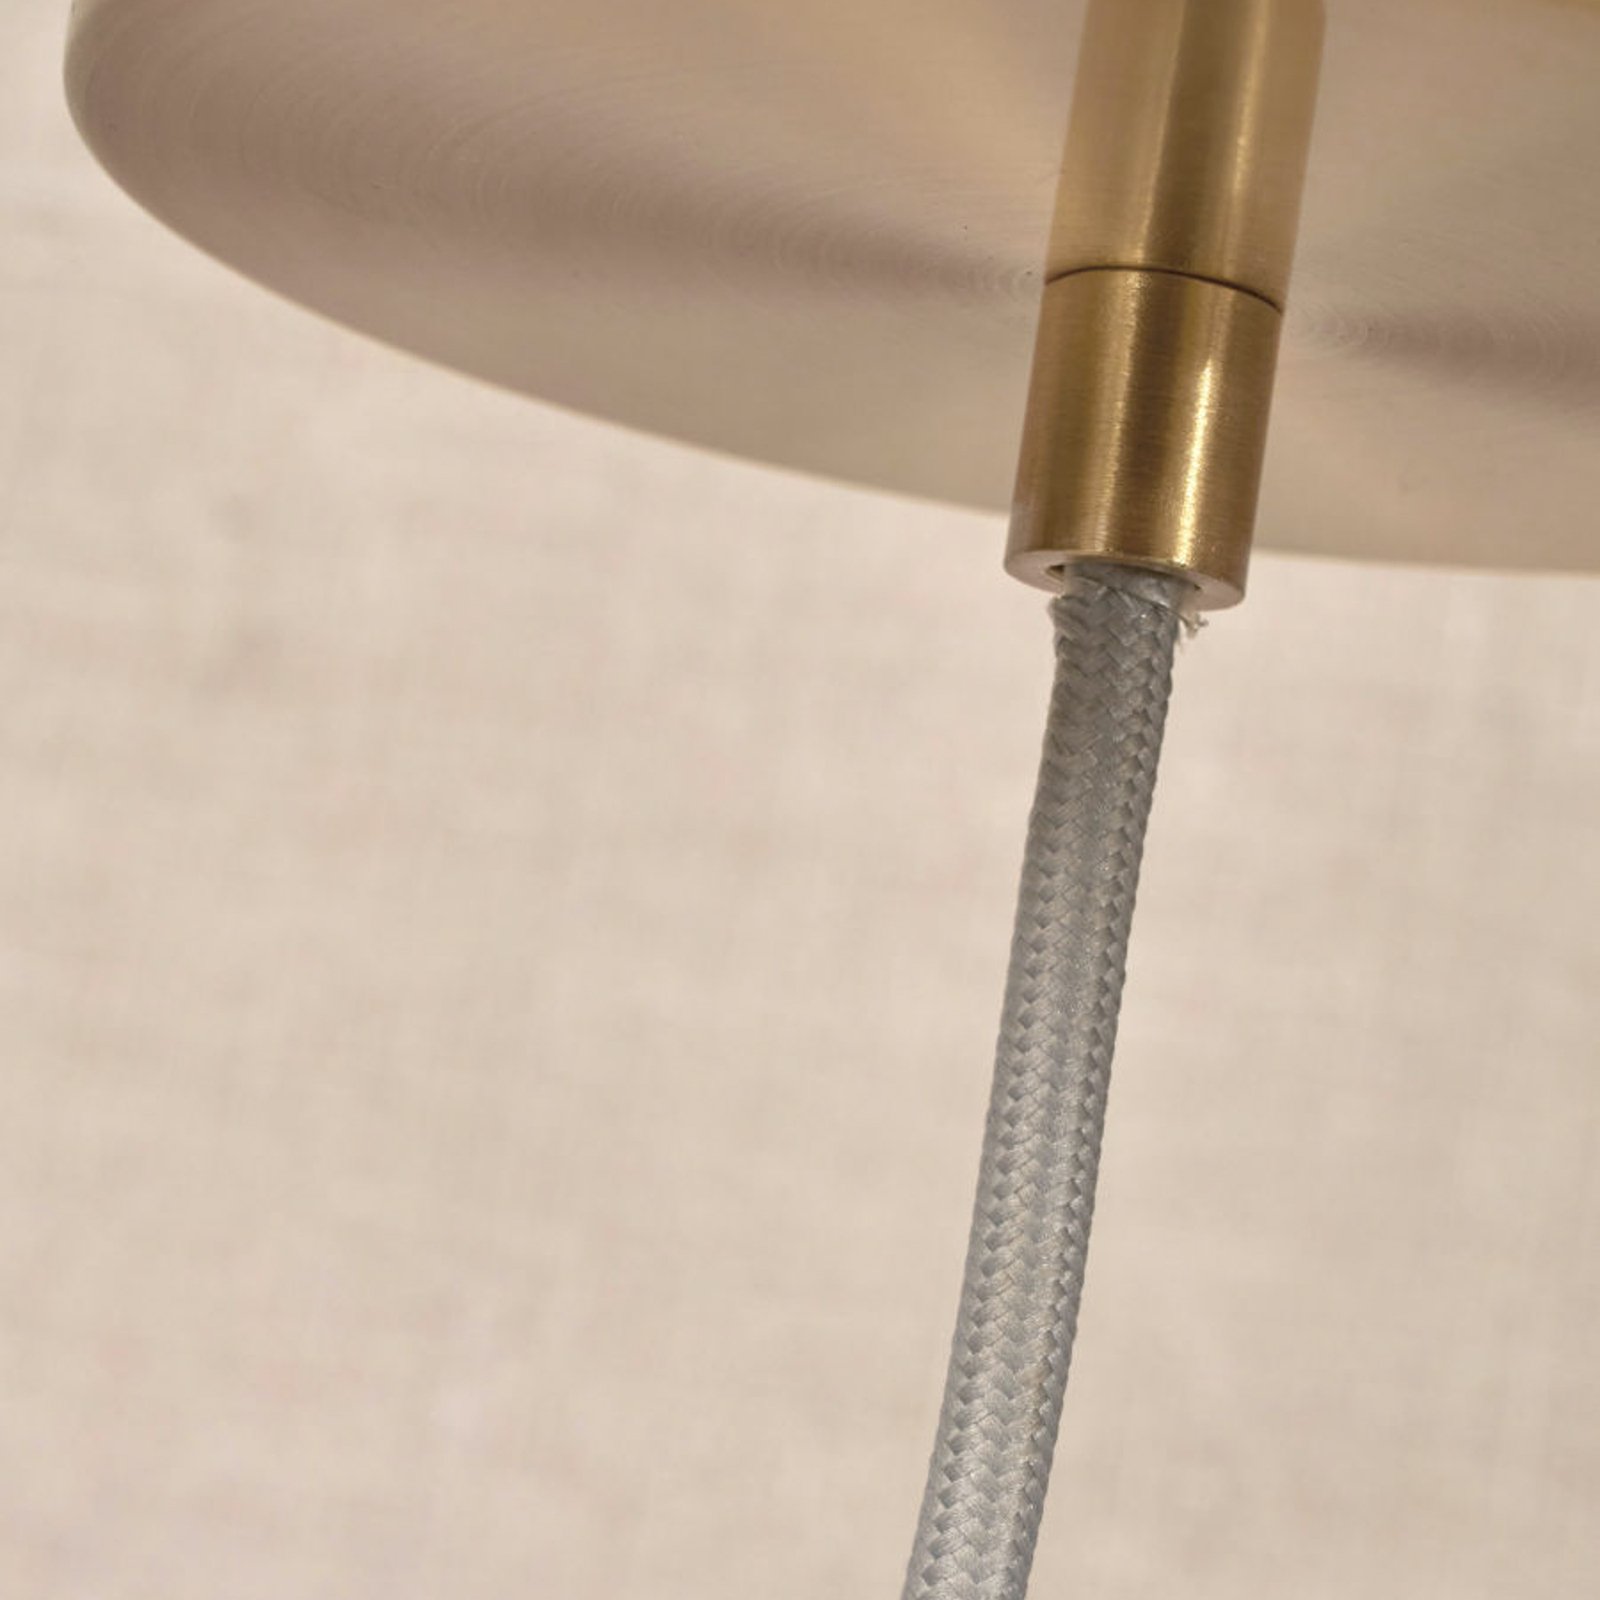 Het gaat om Romi Carrara hanglamp 1-lamp Ø 16cm